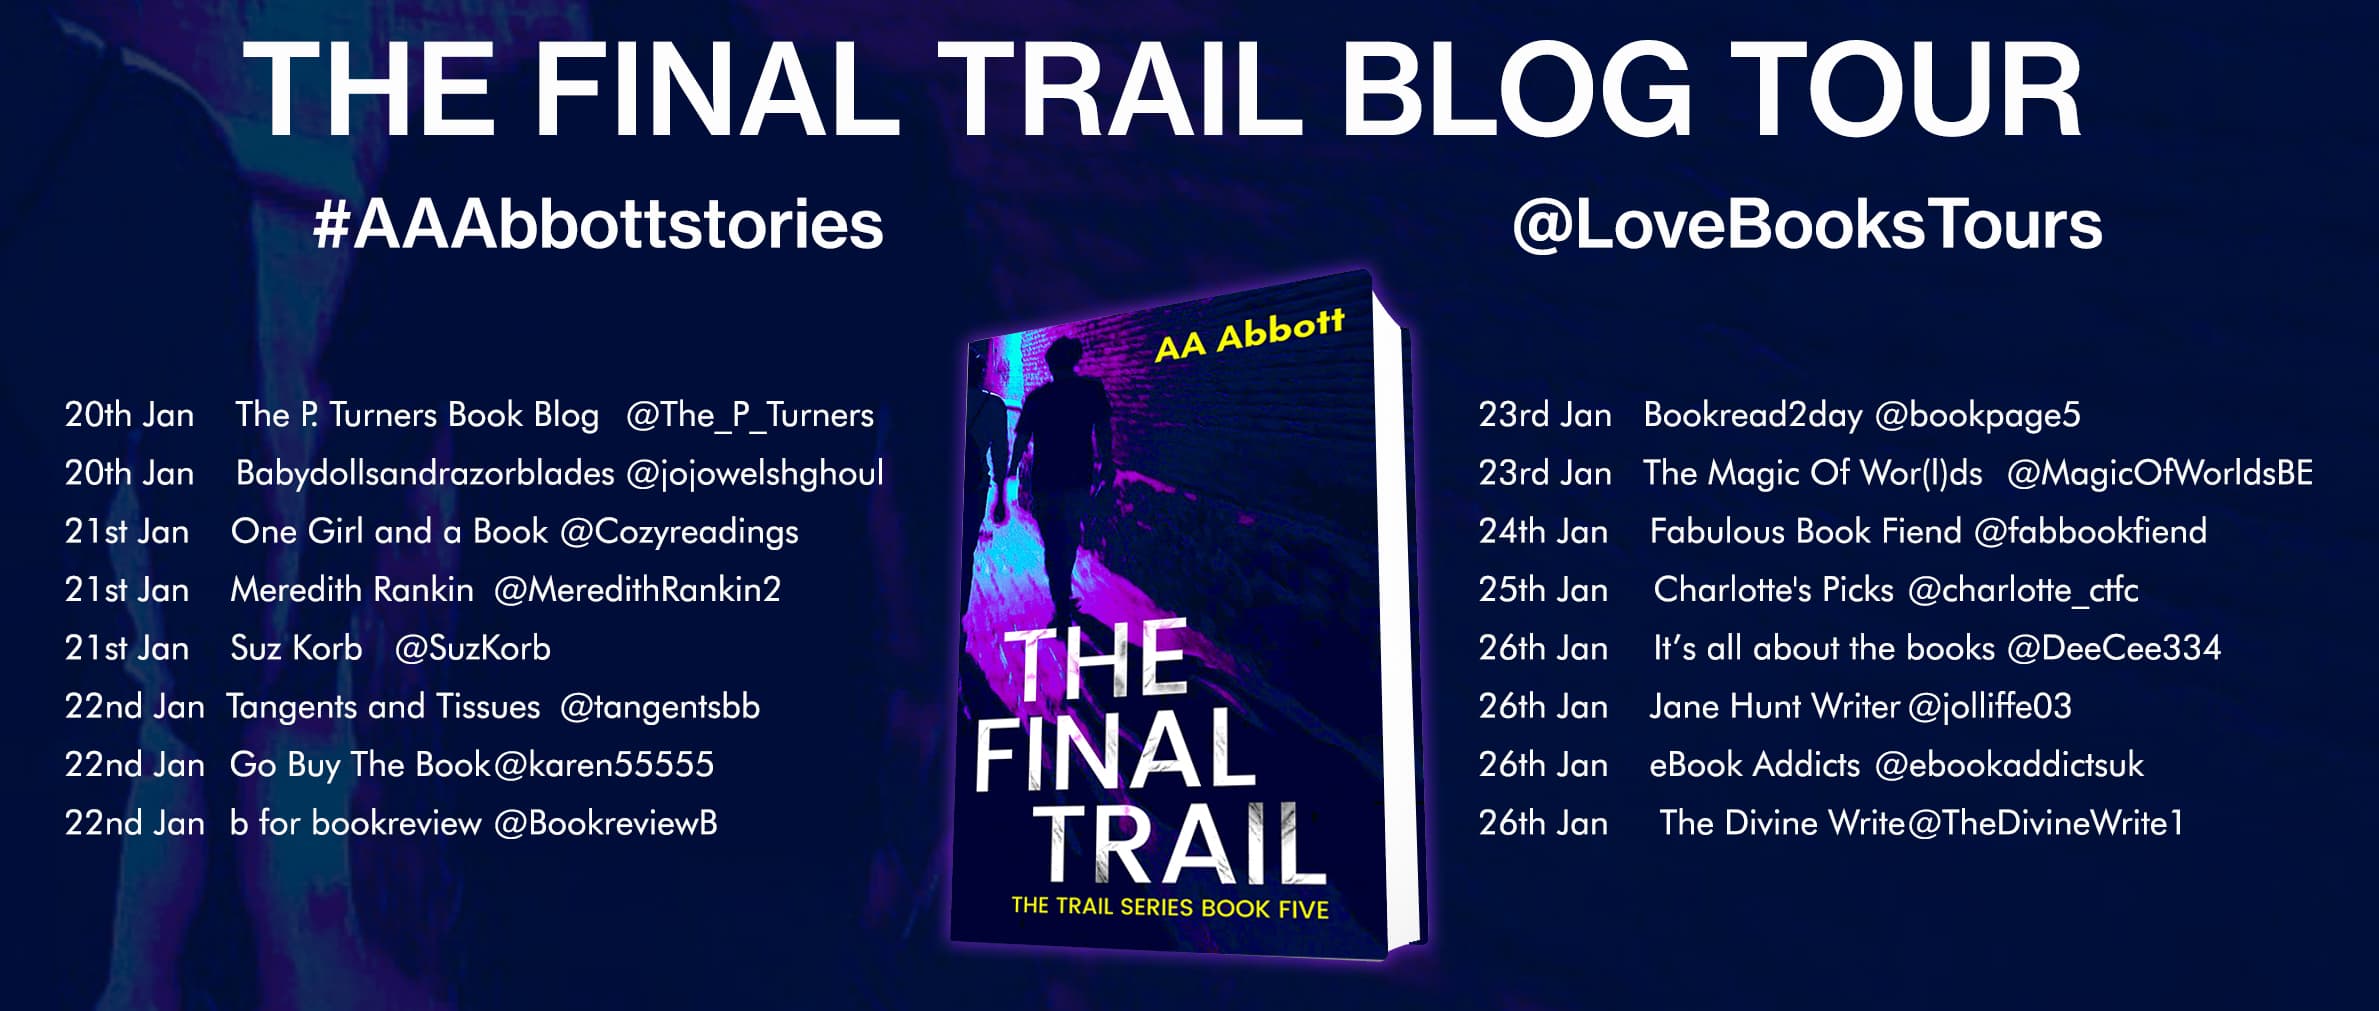 Final Trail blog tour poster